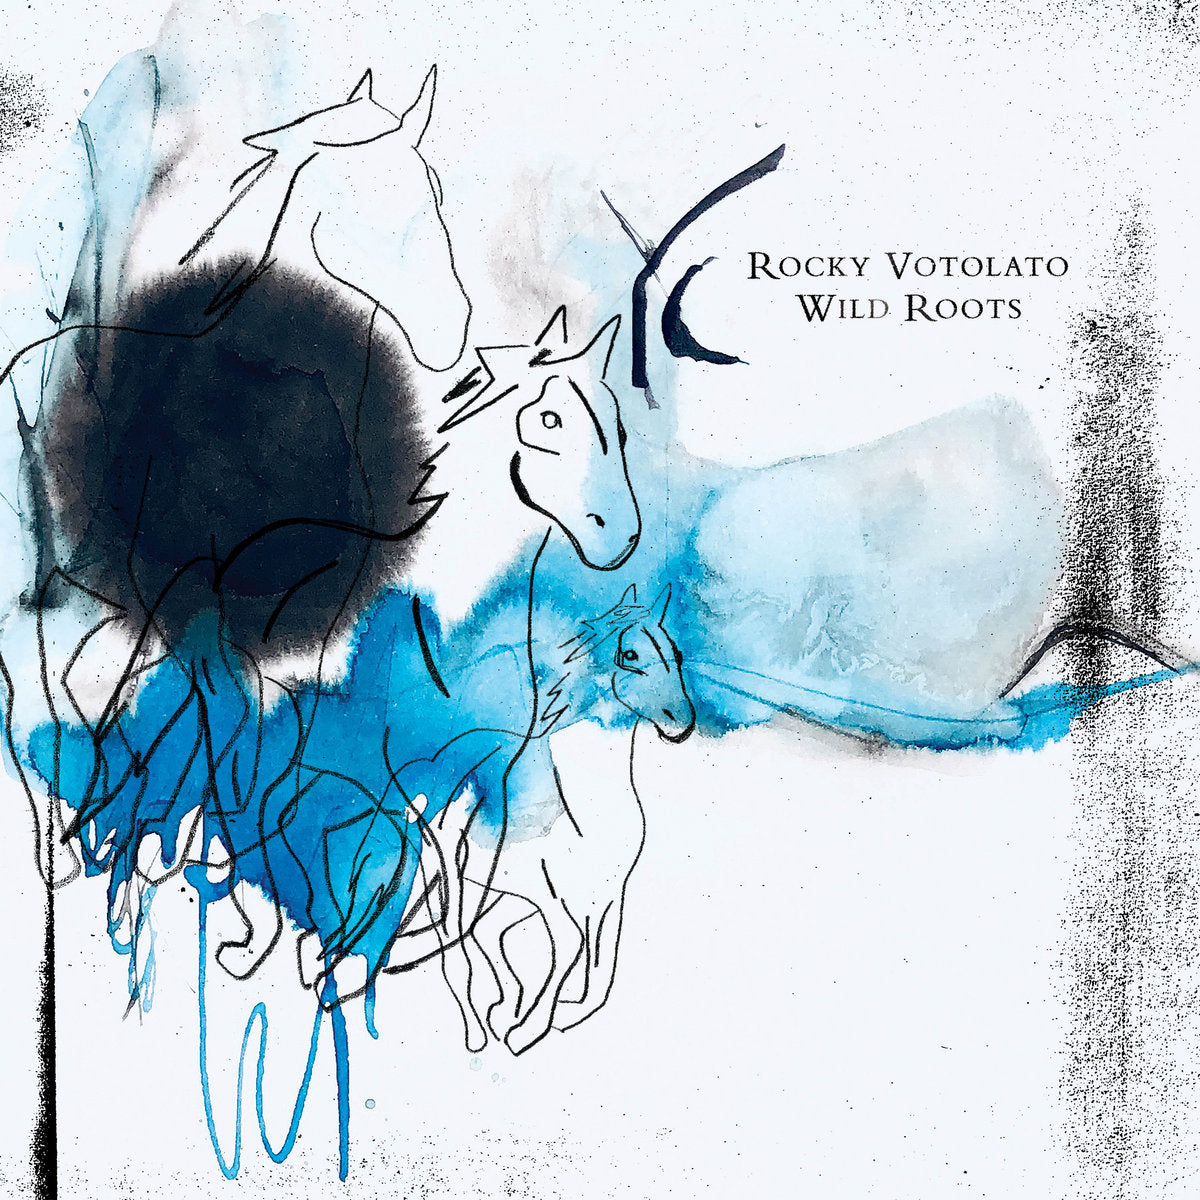 Rocky Votolato  "Wild Roots" LP